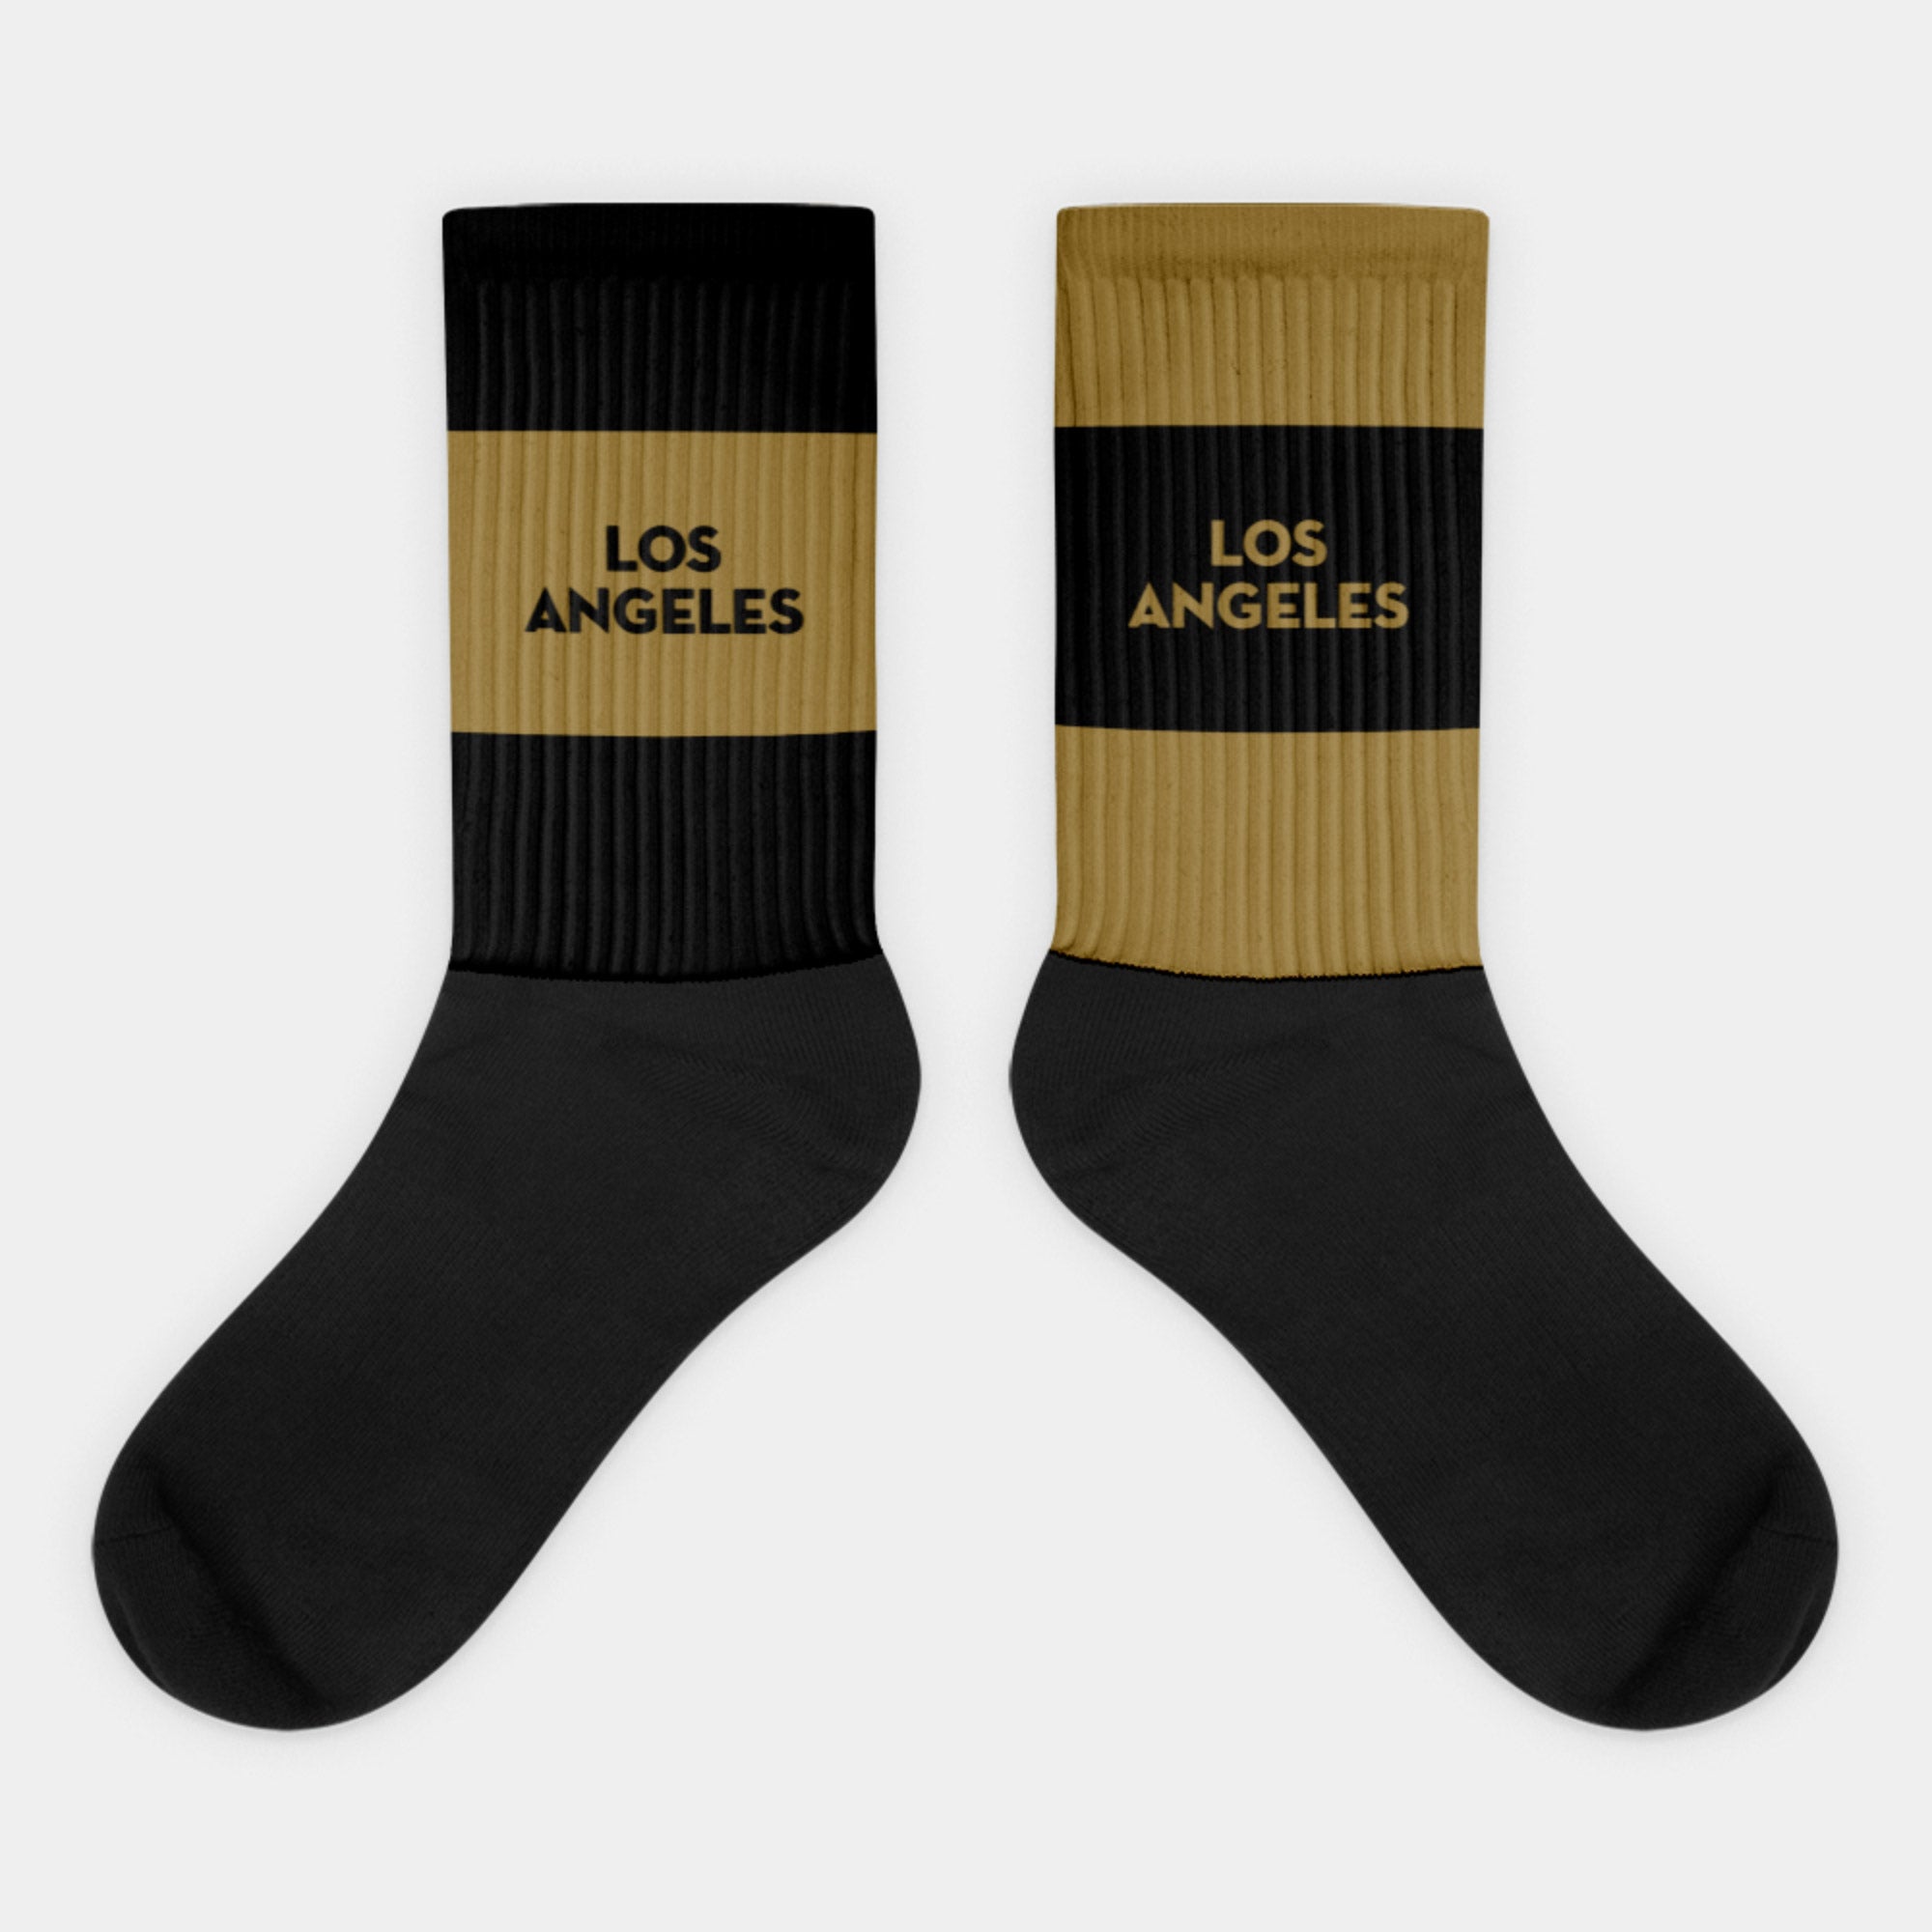 Black & Gold (LAFC) Crew Socks